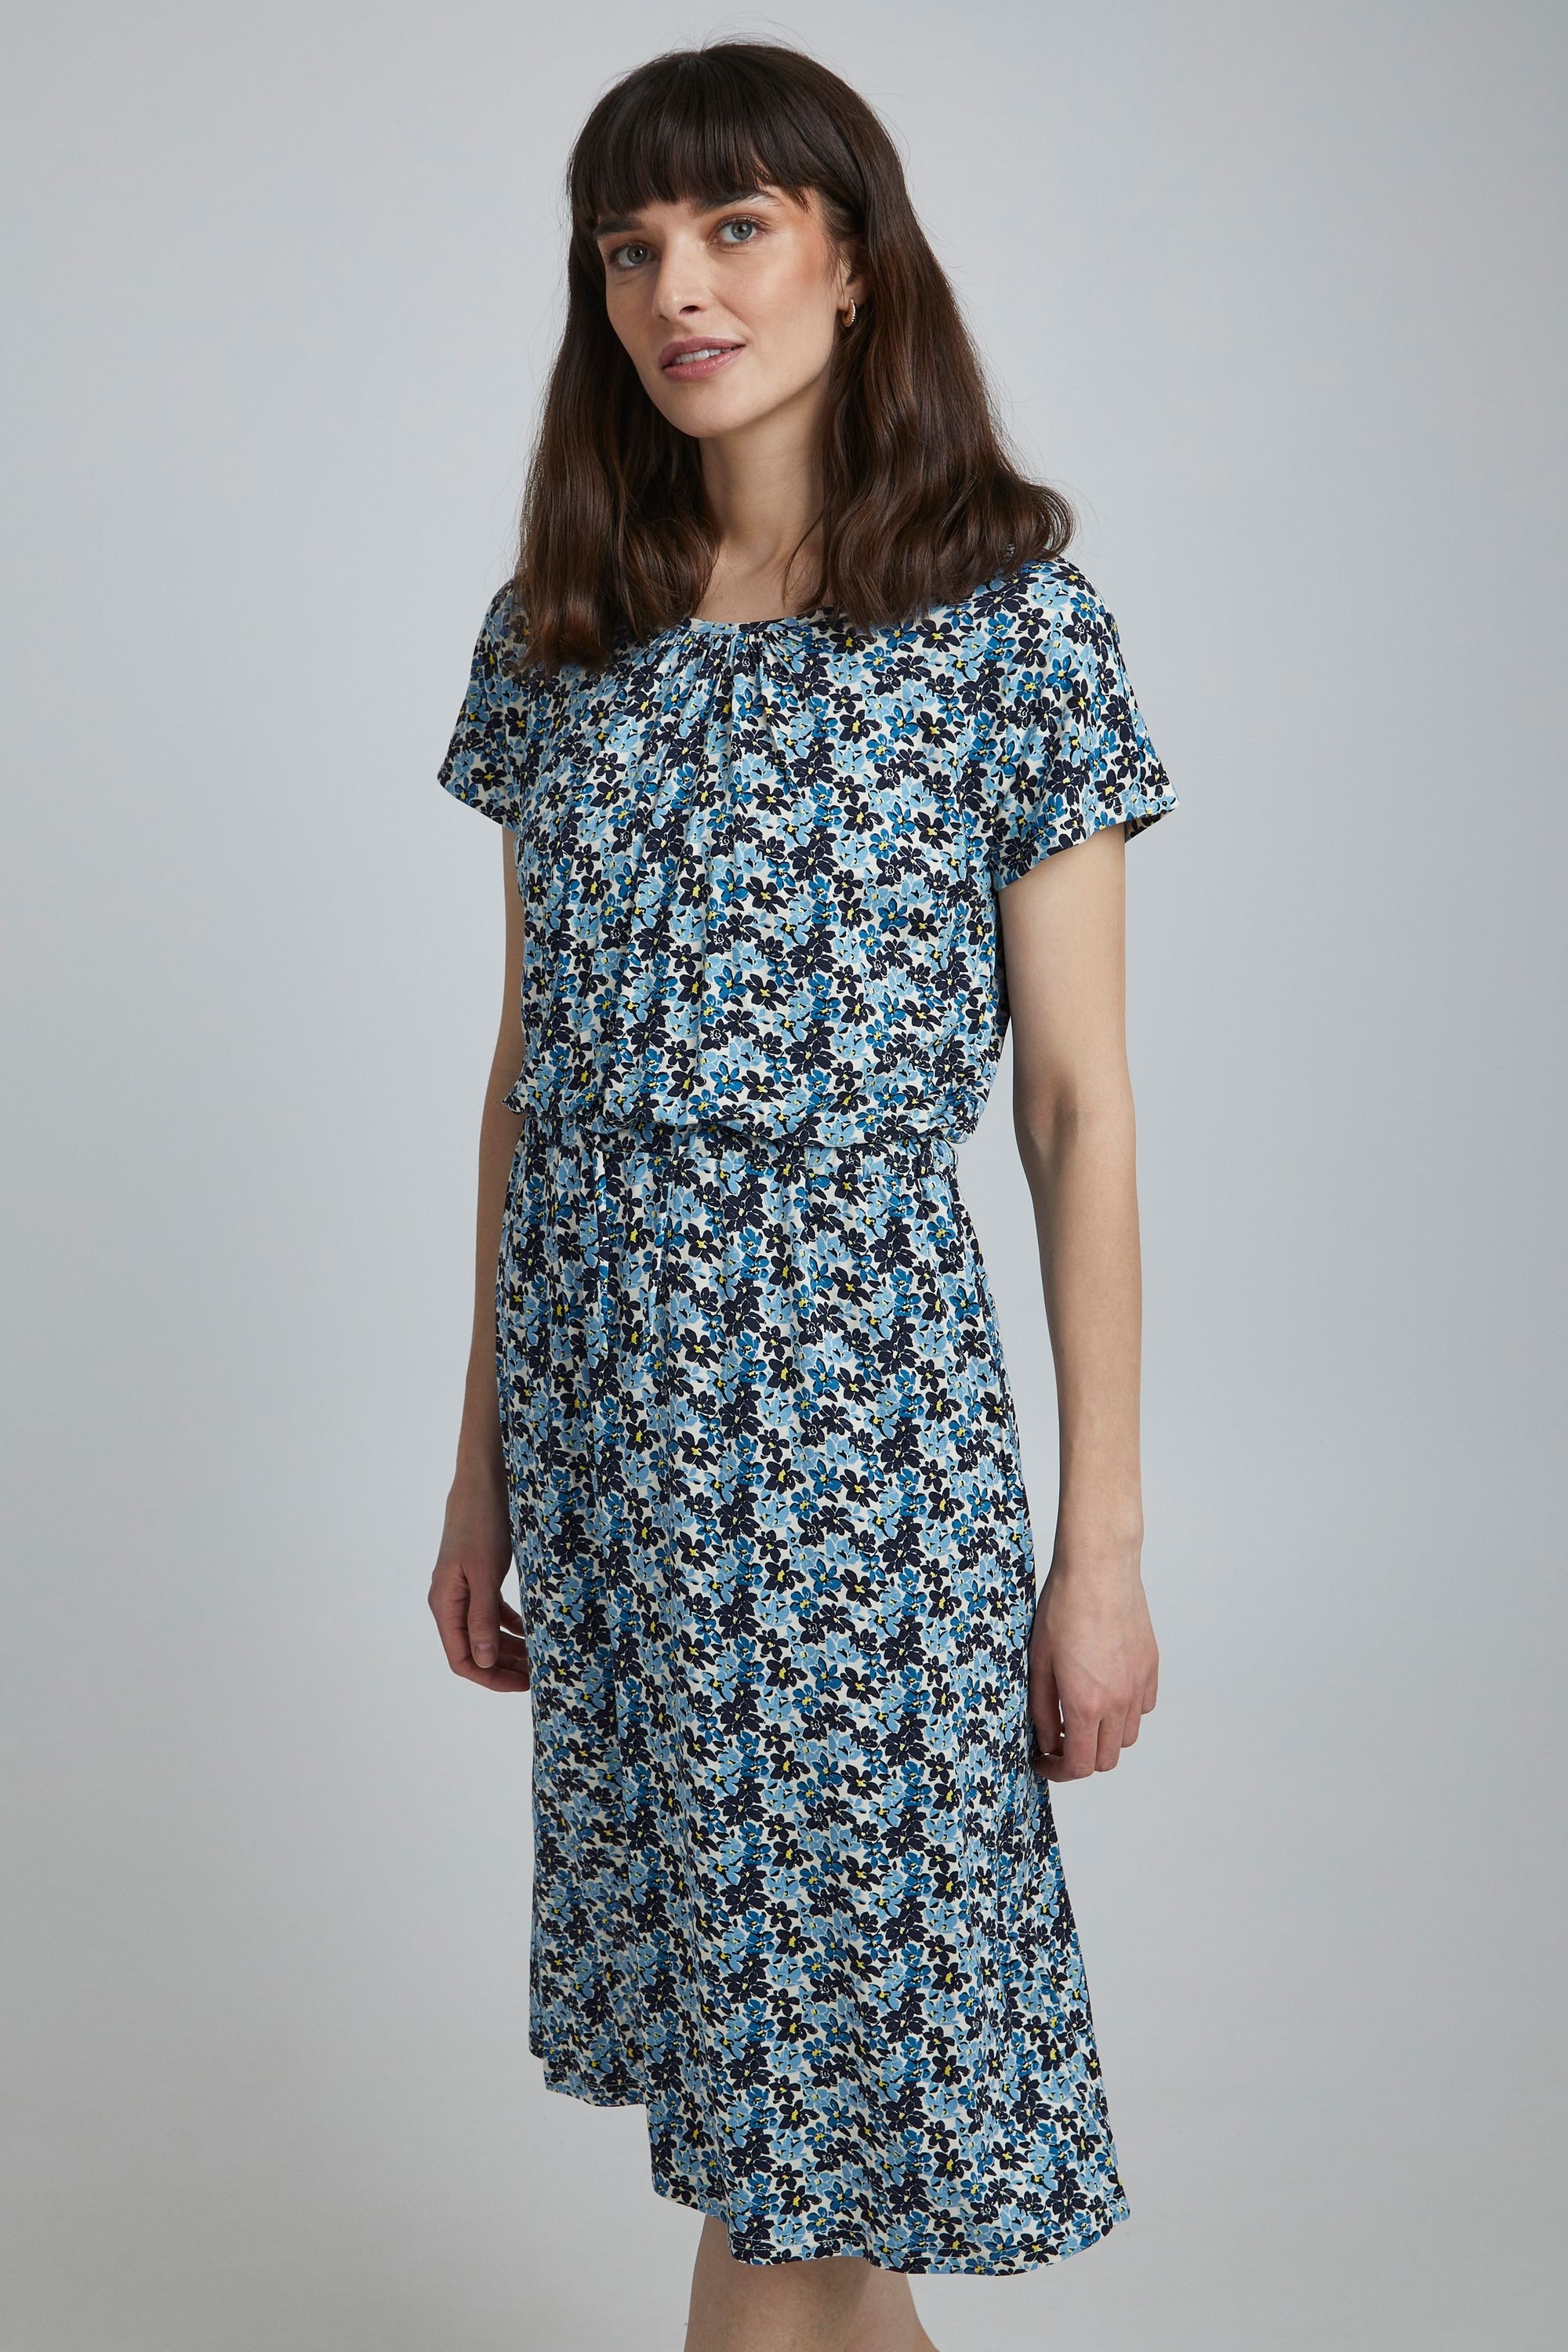 bestellen FRFEDOT BAUR 20610508« fransa 5 - Blusenkleid »Fransa online Dress |